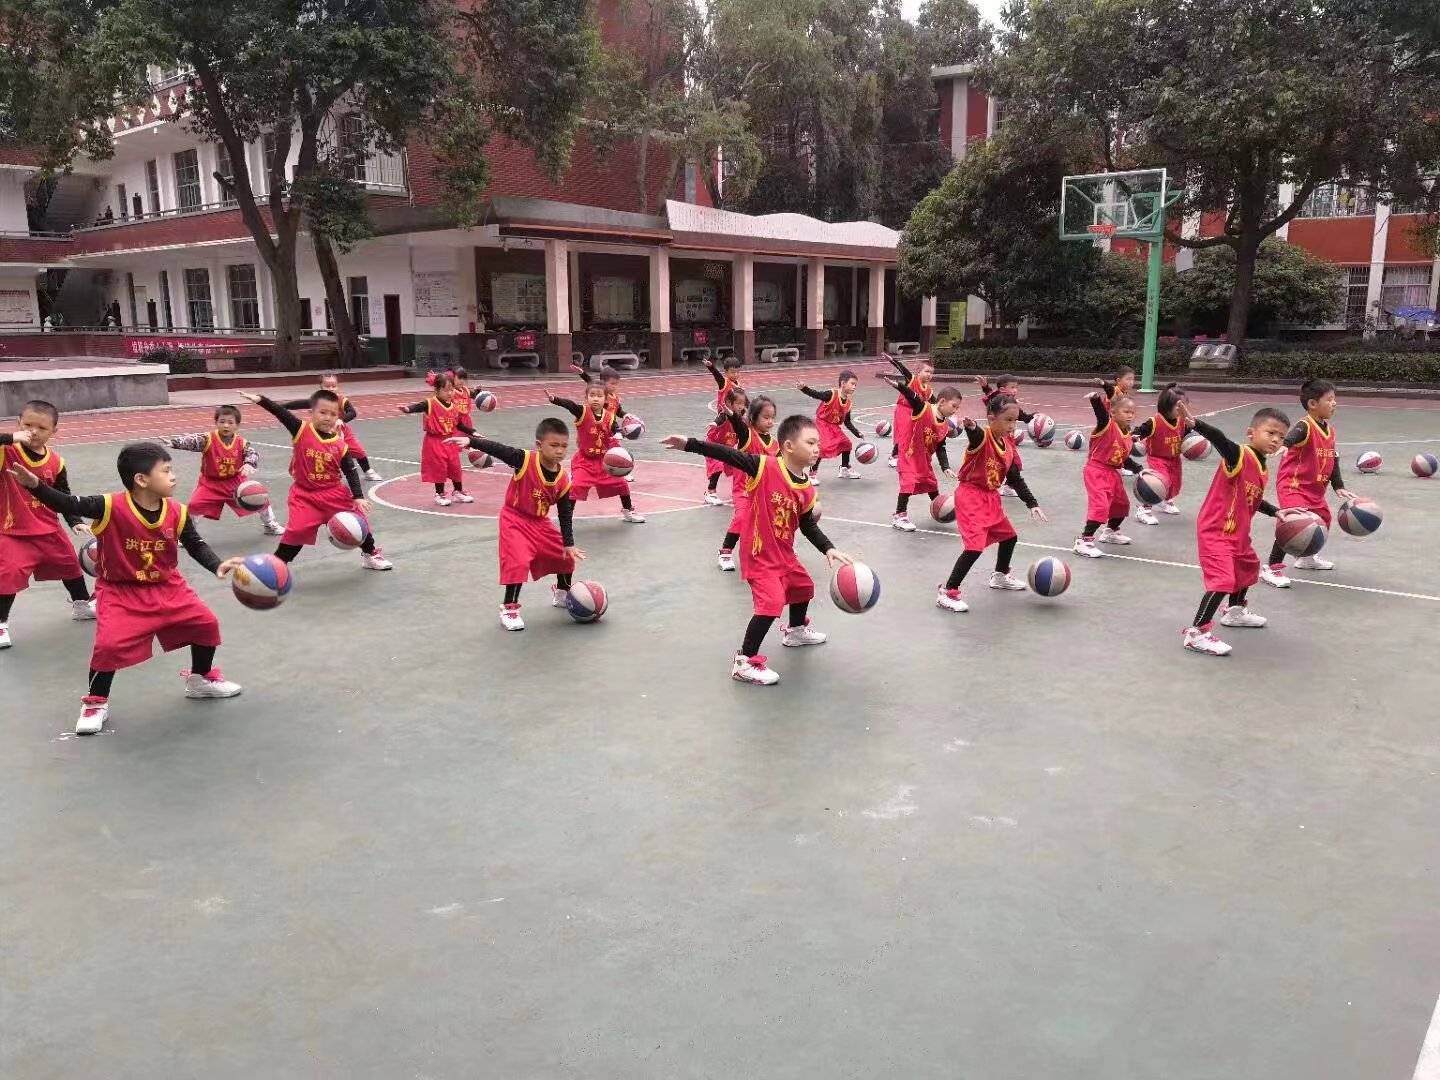 湖南快递员18年免费教上千名乡村儿童打篮球，为了他们放弃升职